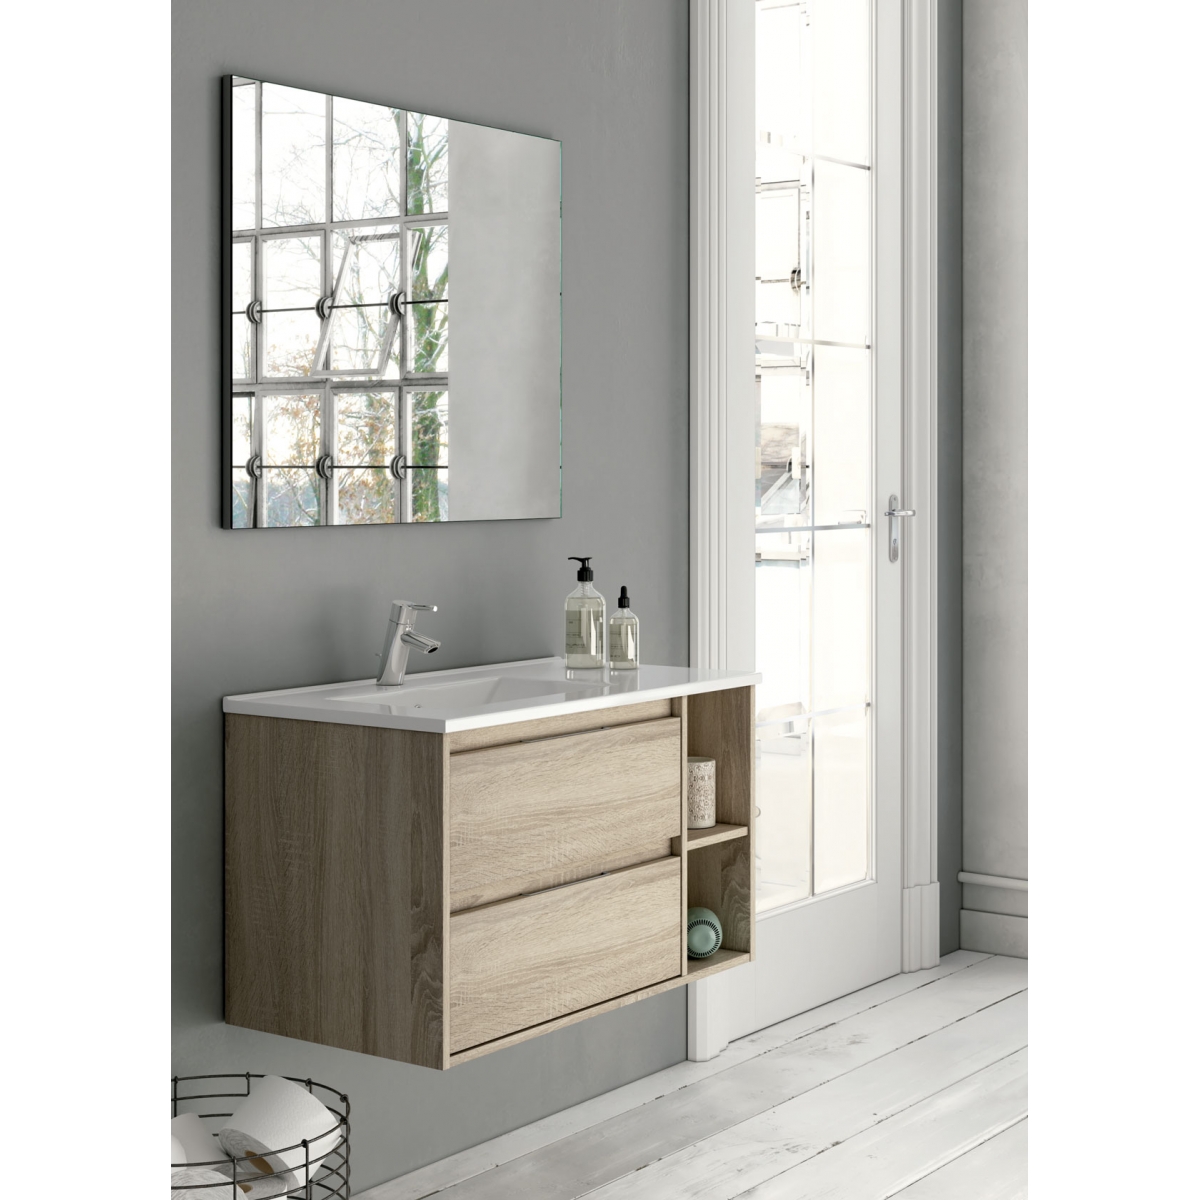 Mueble baño ALMAGRO CAMBRIAN de 80 cm ,con lavabo ceramico y espejo.Nuevo  modelo en oferta por su lanzamiento - Zomwy